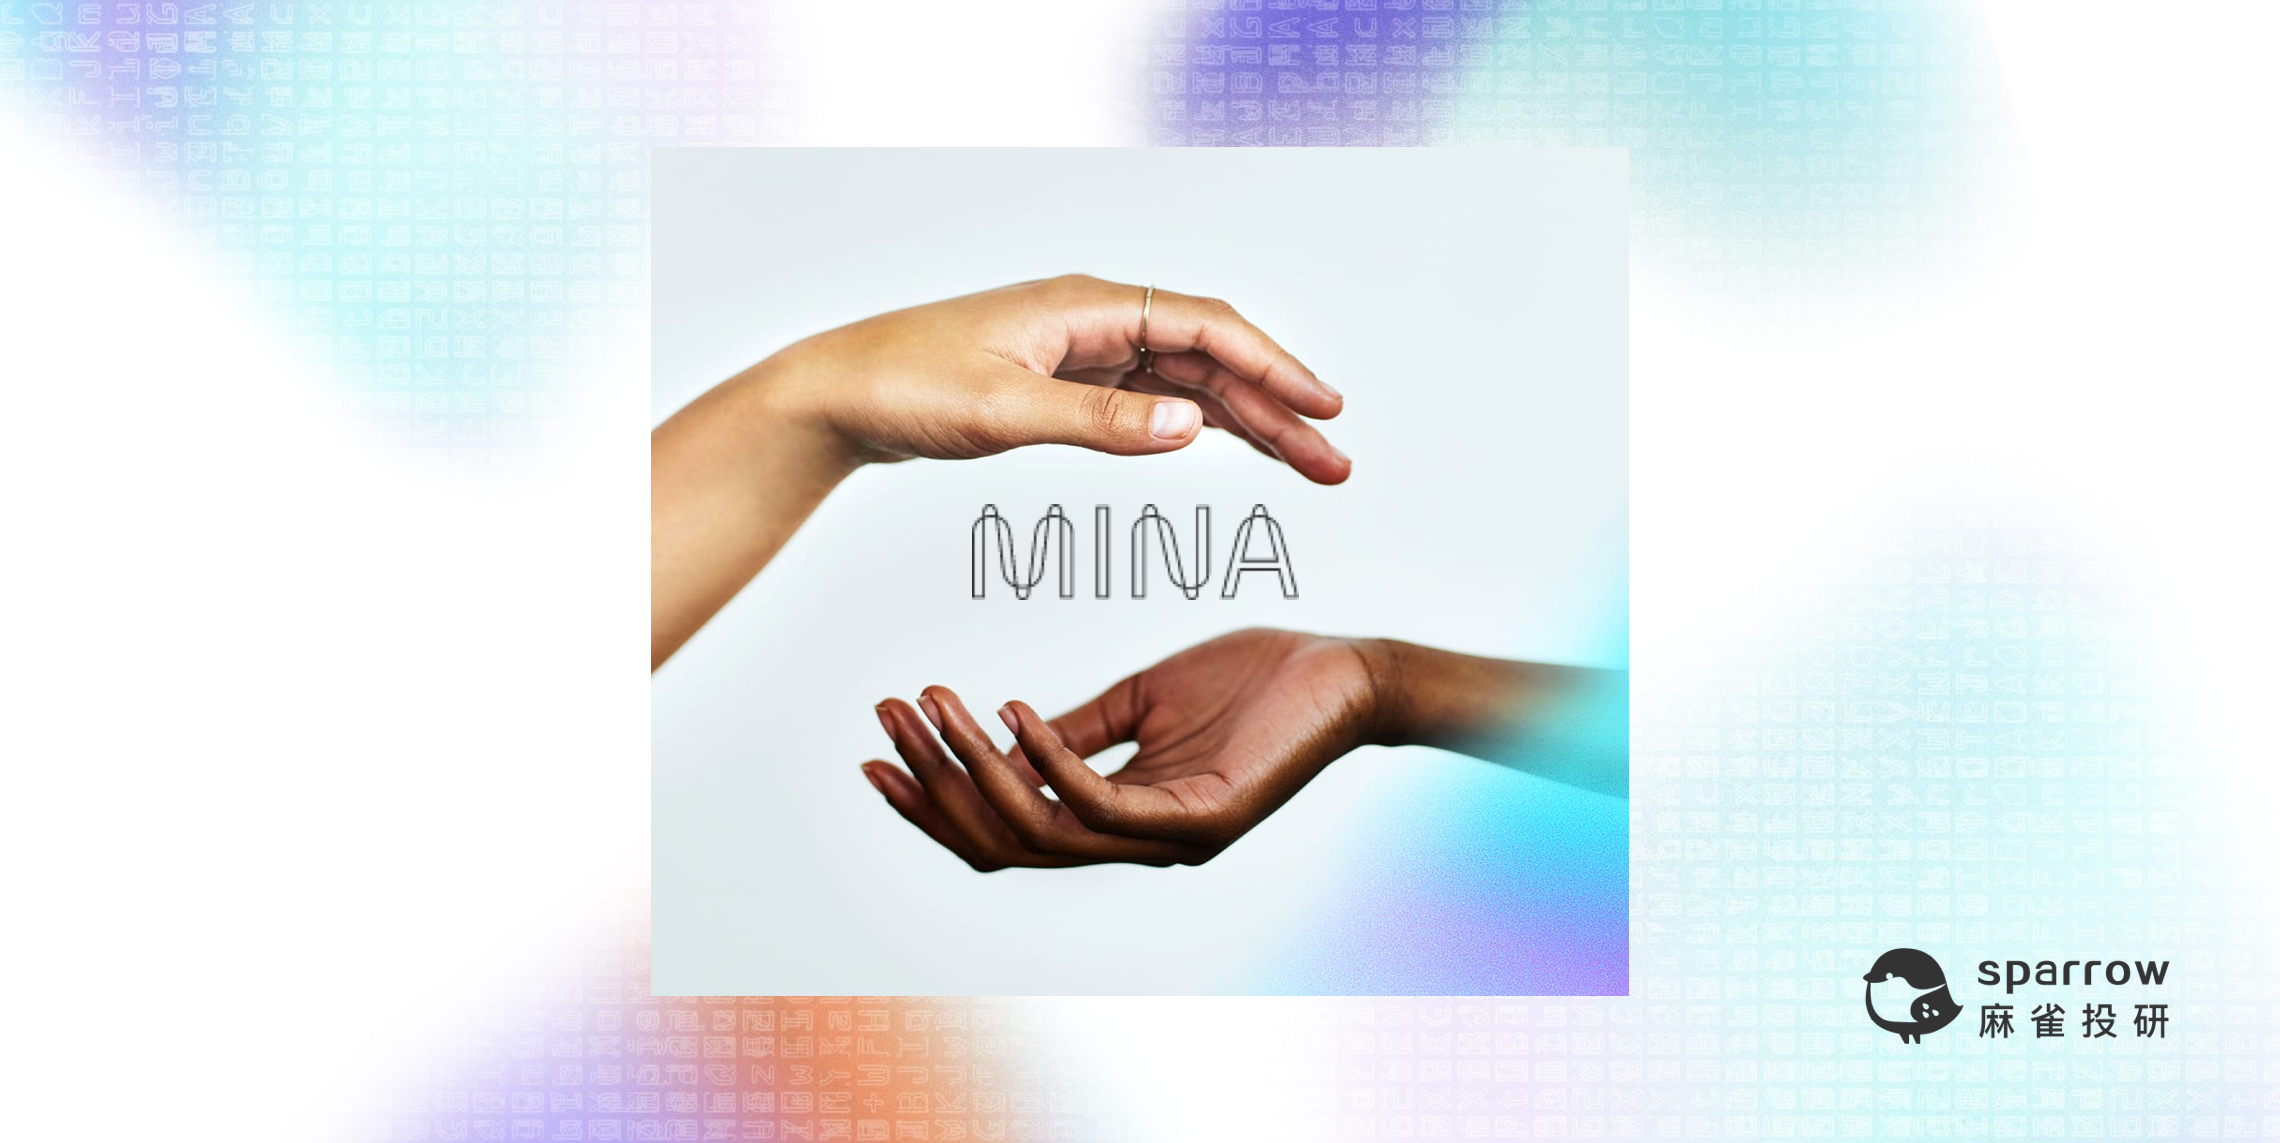 Mina